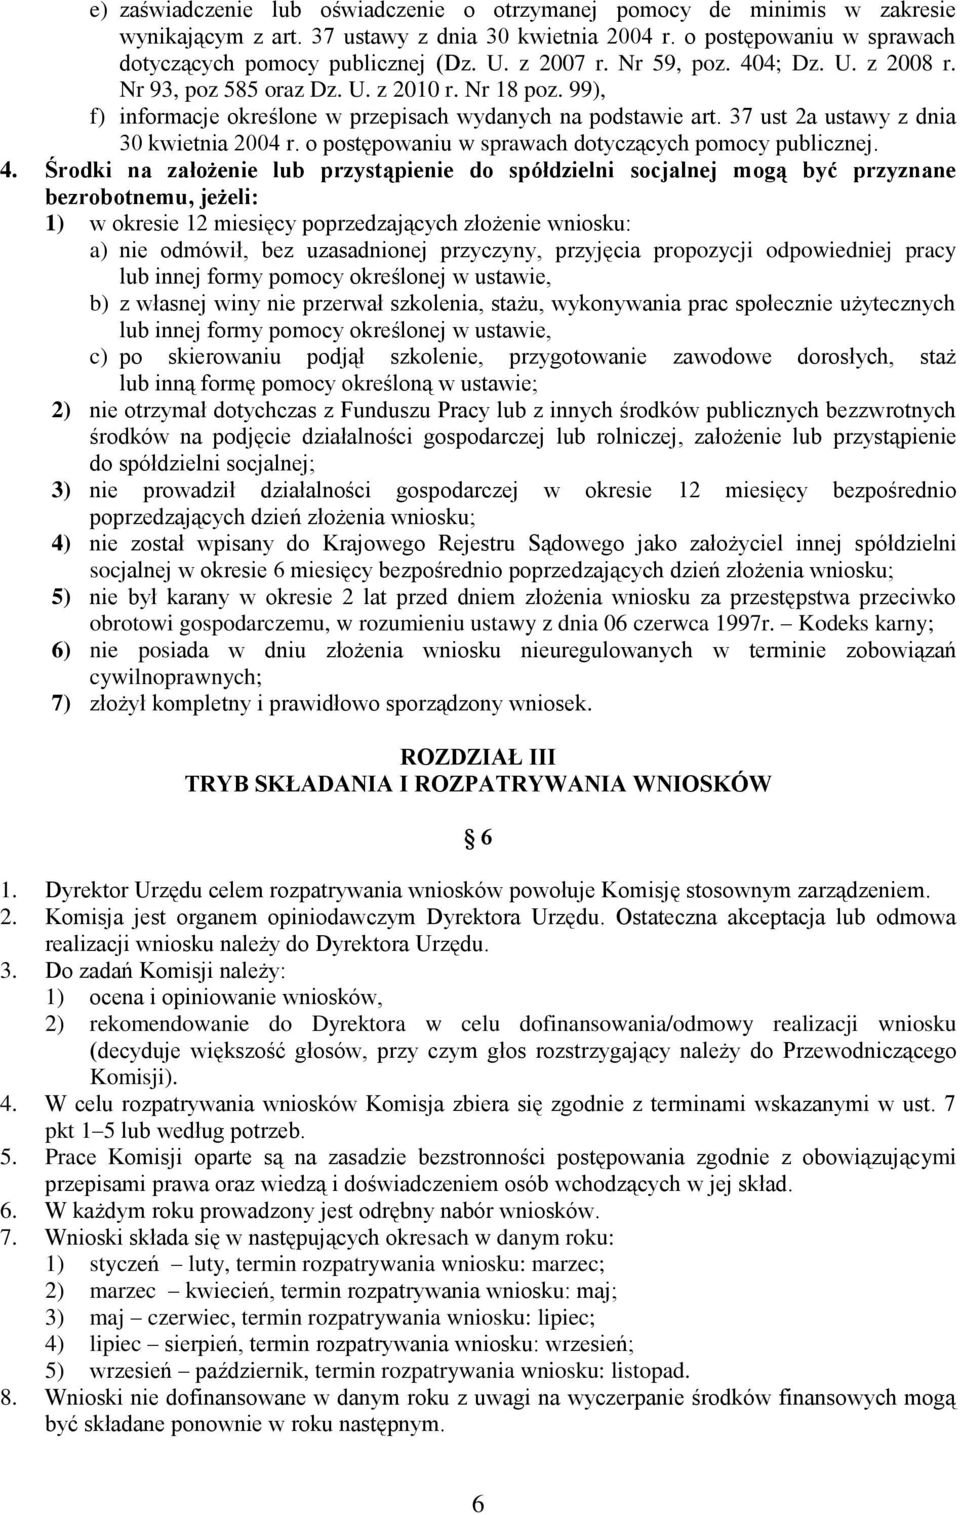 37 ust 2a ustawy z dnia 30 kwietnia 2004 r. o postępowaniu w sprawach dotyczących pomocy publicznej. 4.